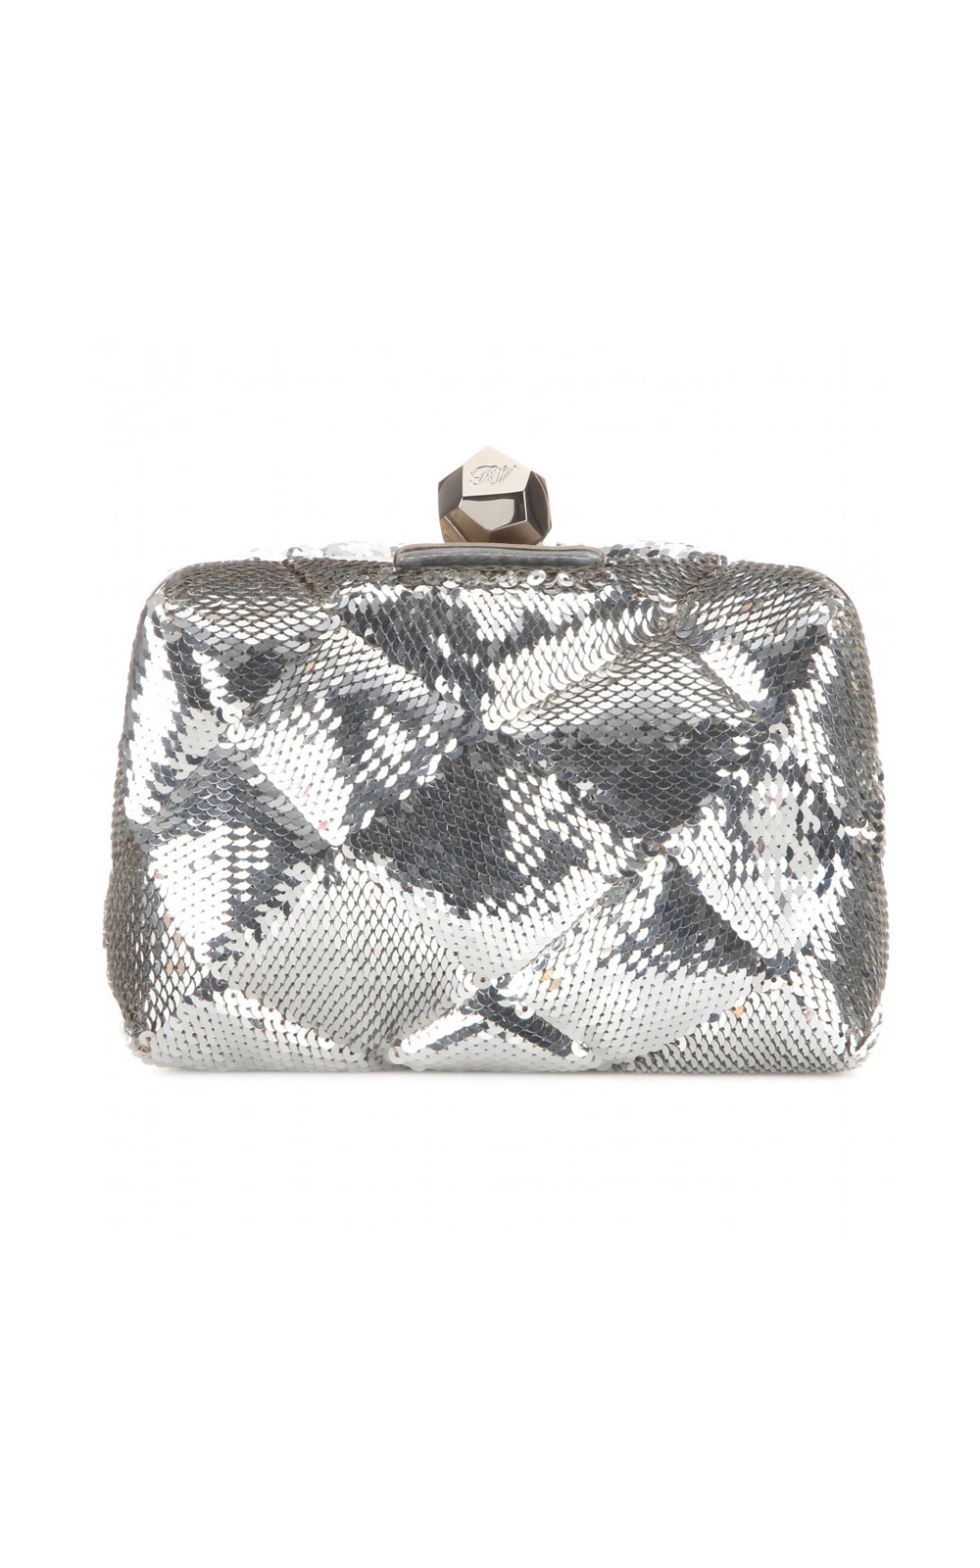 Pattern, Bag, Rectangle, Grey, Beige, Wallet, Coin purse, Silver, Shoulder bag, Baggage, 